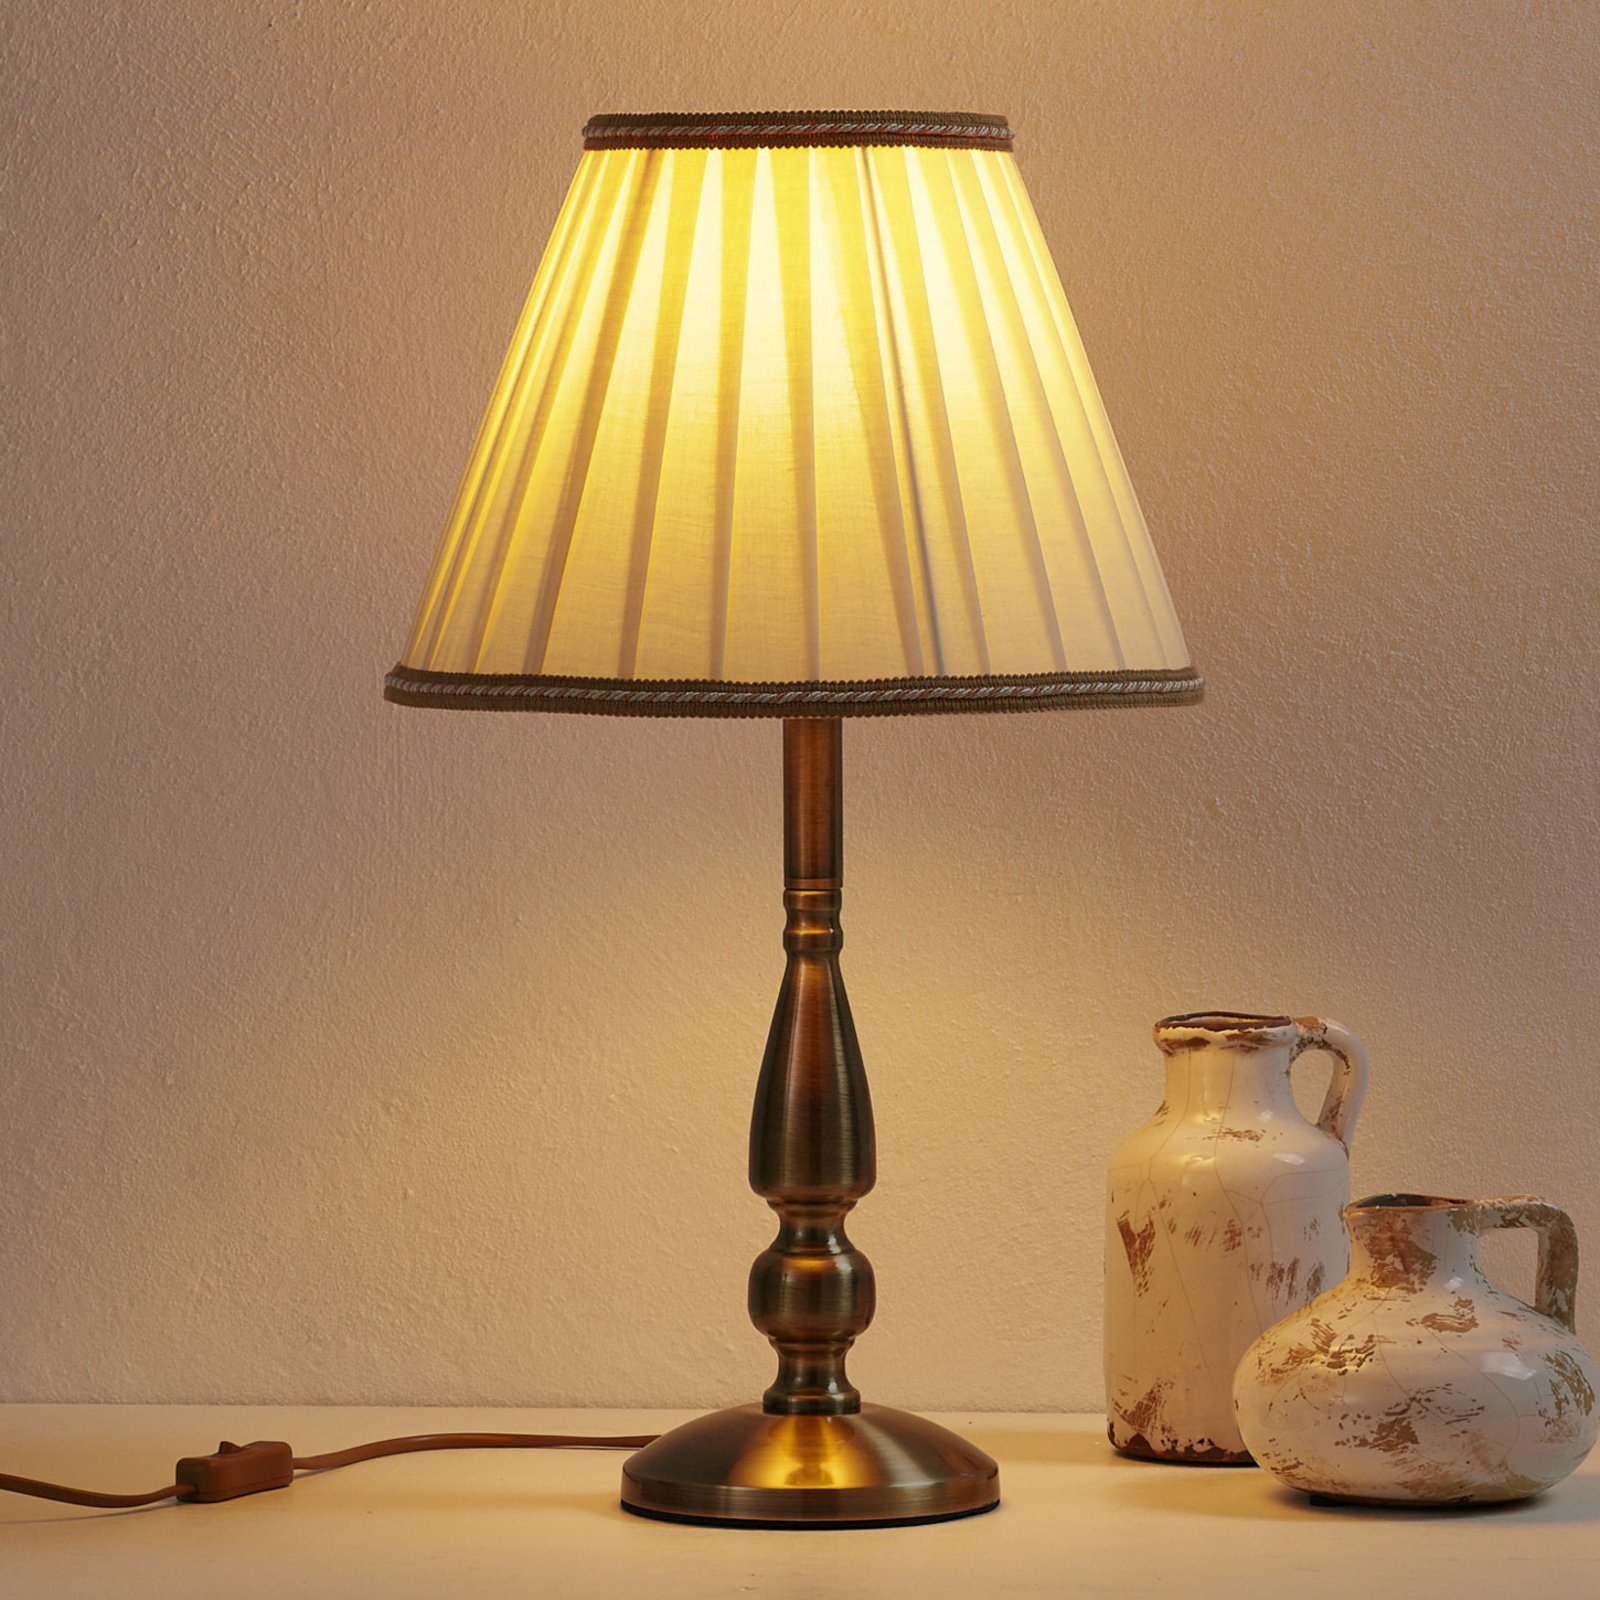 Rosella bordslampa 50 cm hög